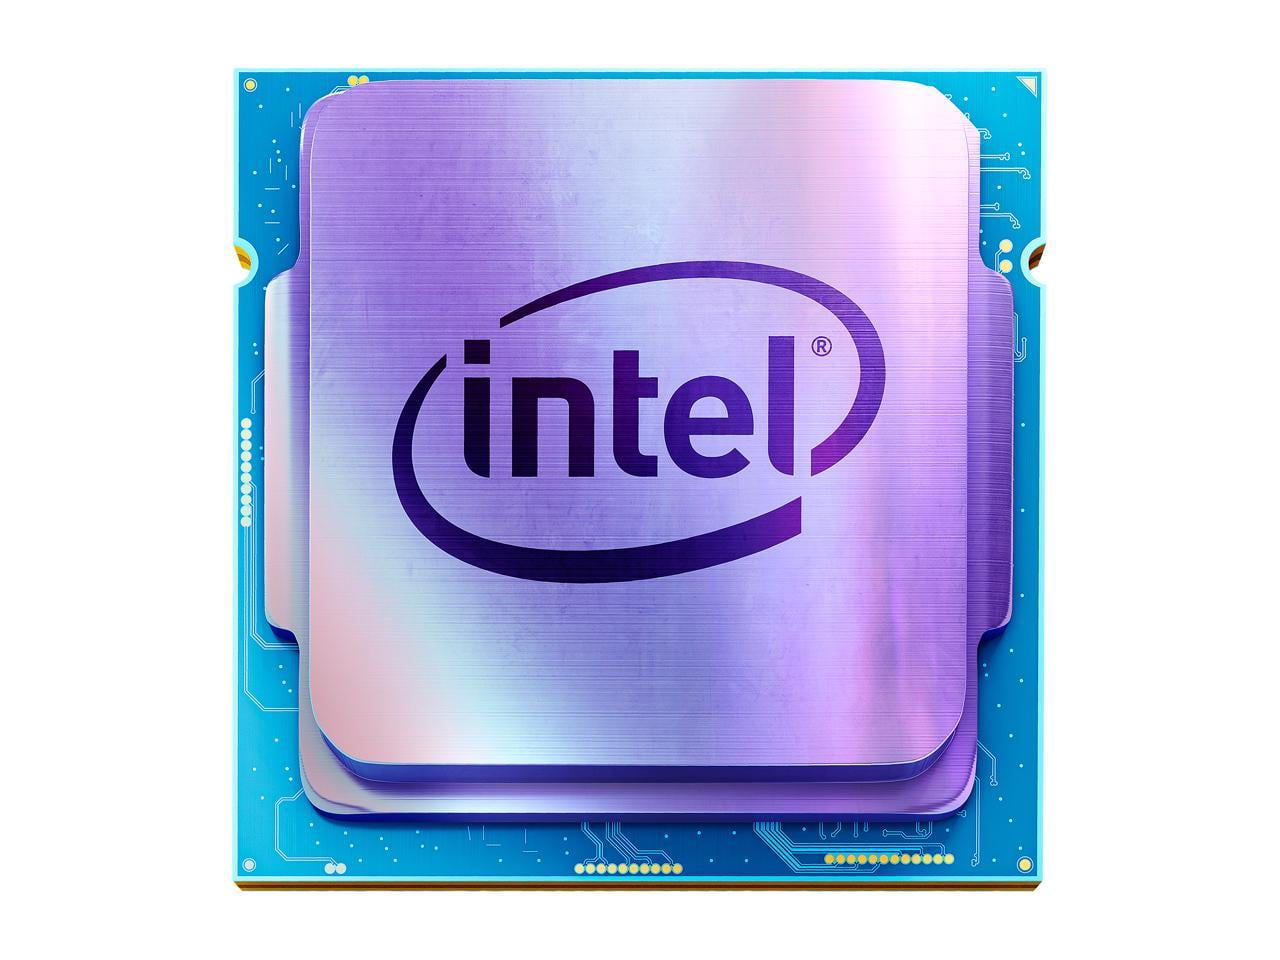 software klaver Paradoks Intel Core i7 10th Gen - Core i7-10700K Comet Lake 8-Core 3.8 GHz LGA 1200  125W Desktop Processor w/ Intel UHD Graphics 630 - Walmart.com